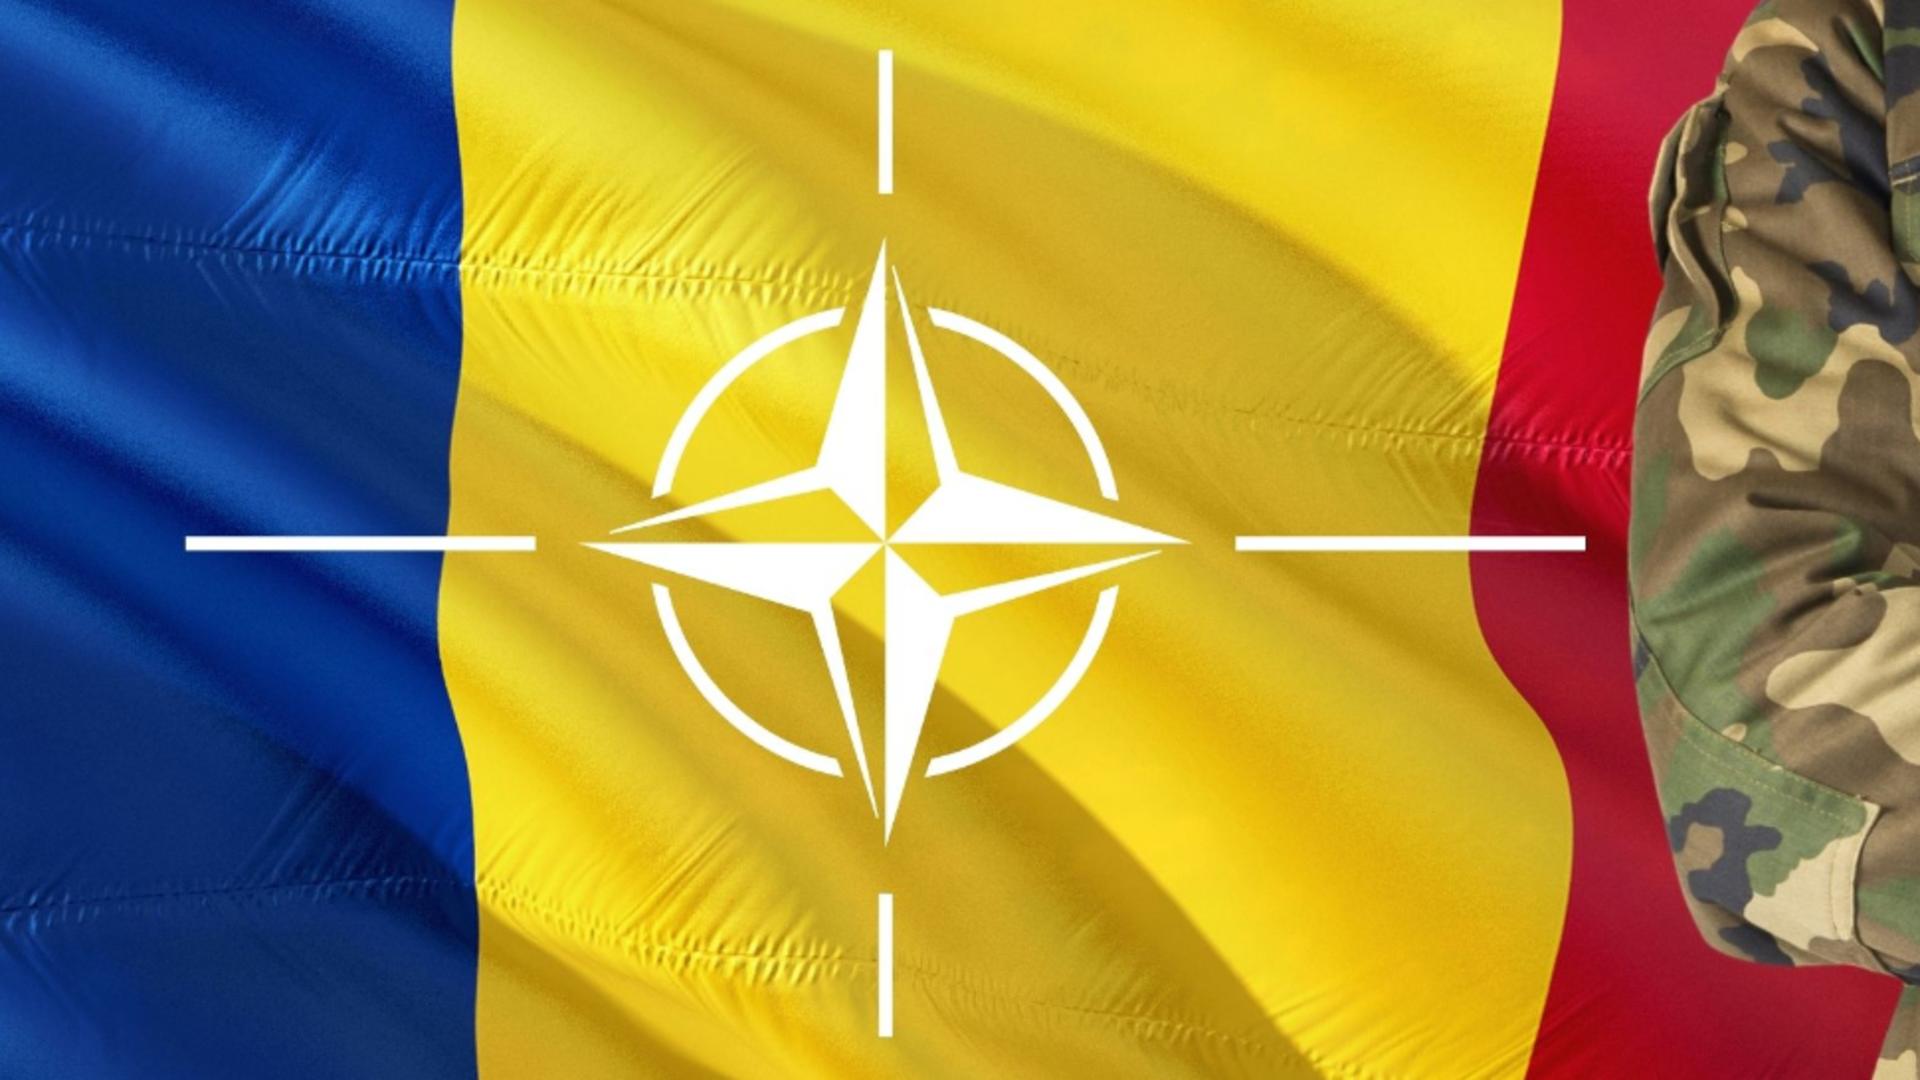 Romania in NATO